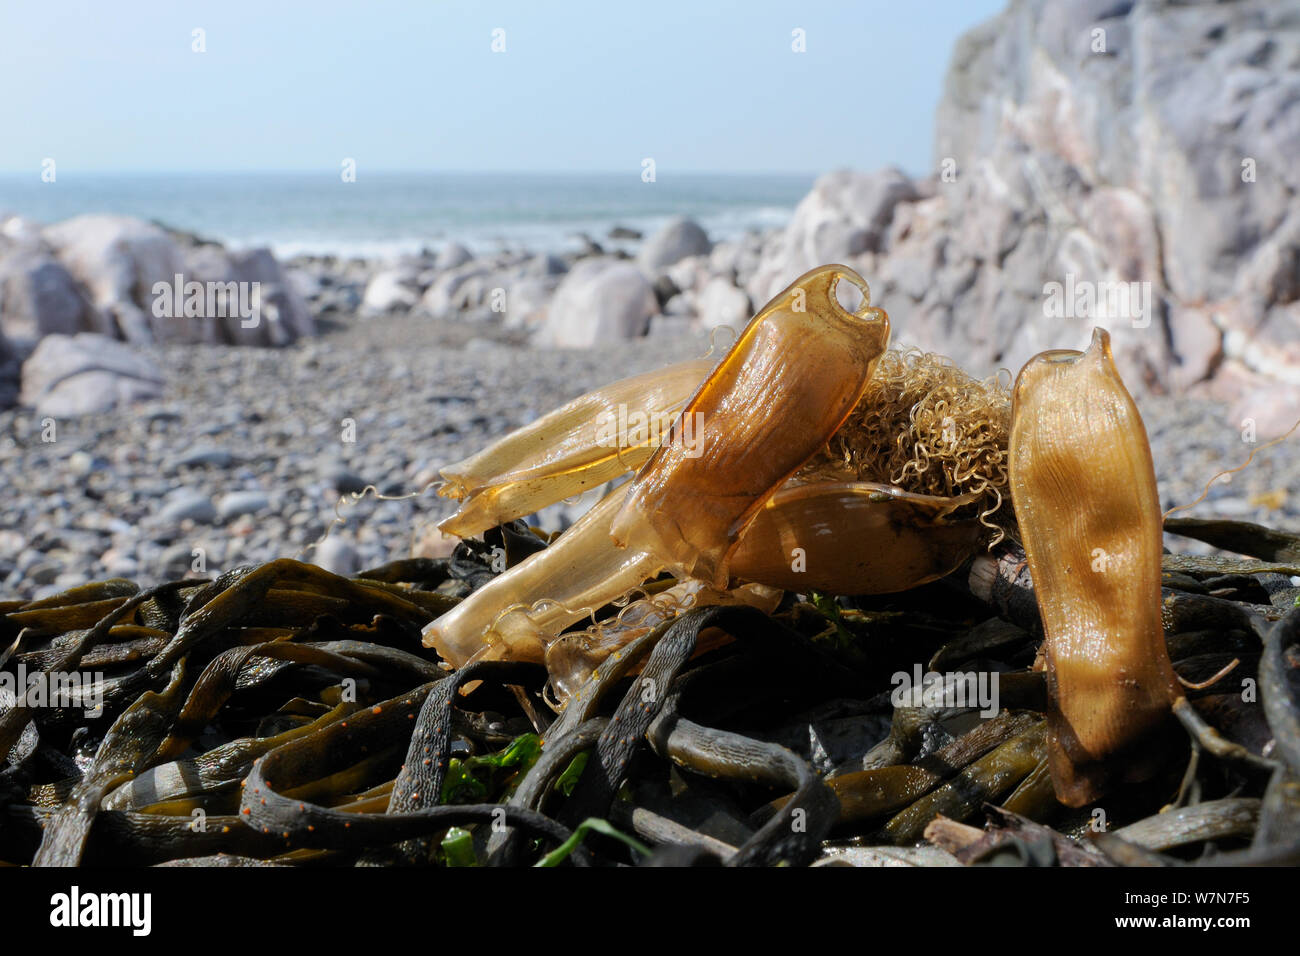 Diversi Mermaid portamonete di uovo casi di minor spotted gattucci / Gattuccio (Scyliorhinus canicula) su alga lavato fino a riva. Rhossili, La Penisola di Gower, UK, Luglio. Foto Stock